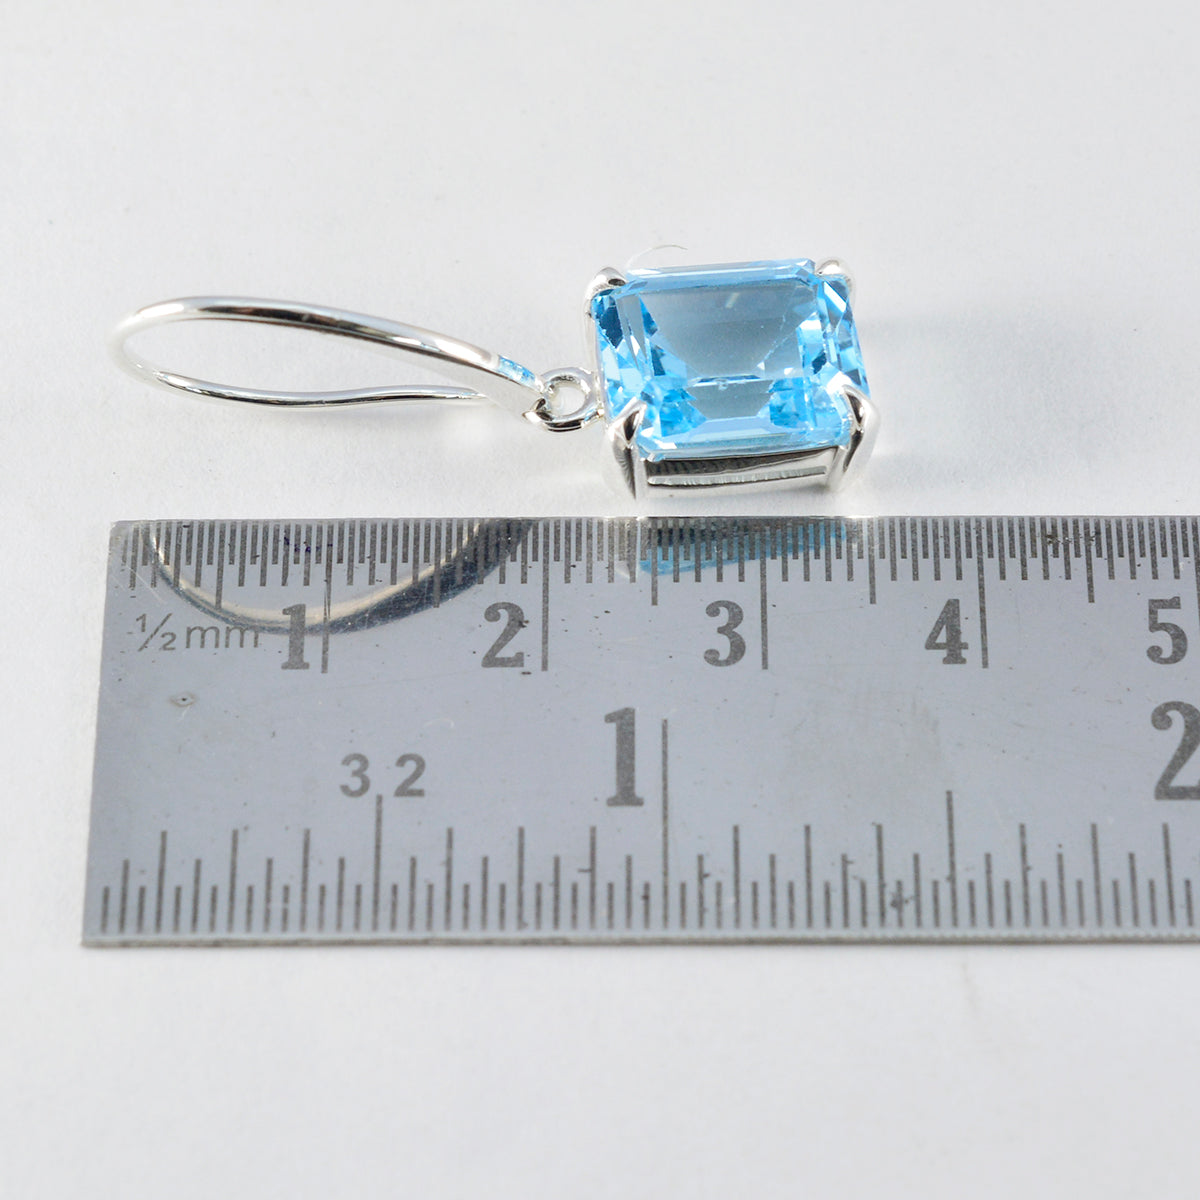 Riyo Beaut 925 Sterling Zilveren Oorbel Voor Demoiselle Blue Topaz Earring Bezel Setting Blue Earring Dangle Earring